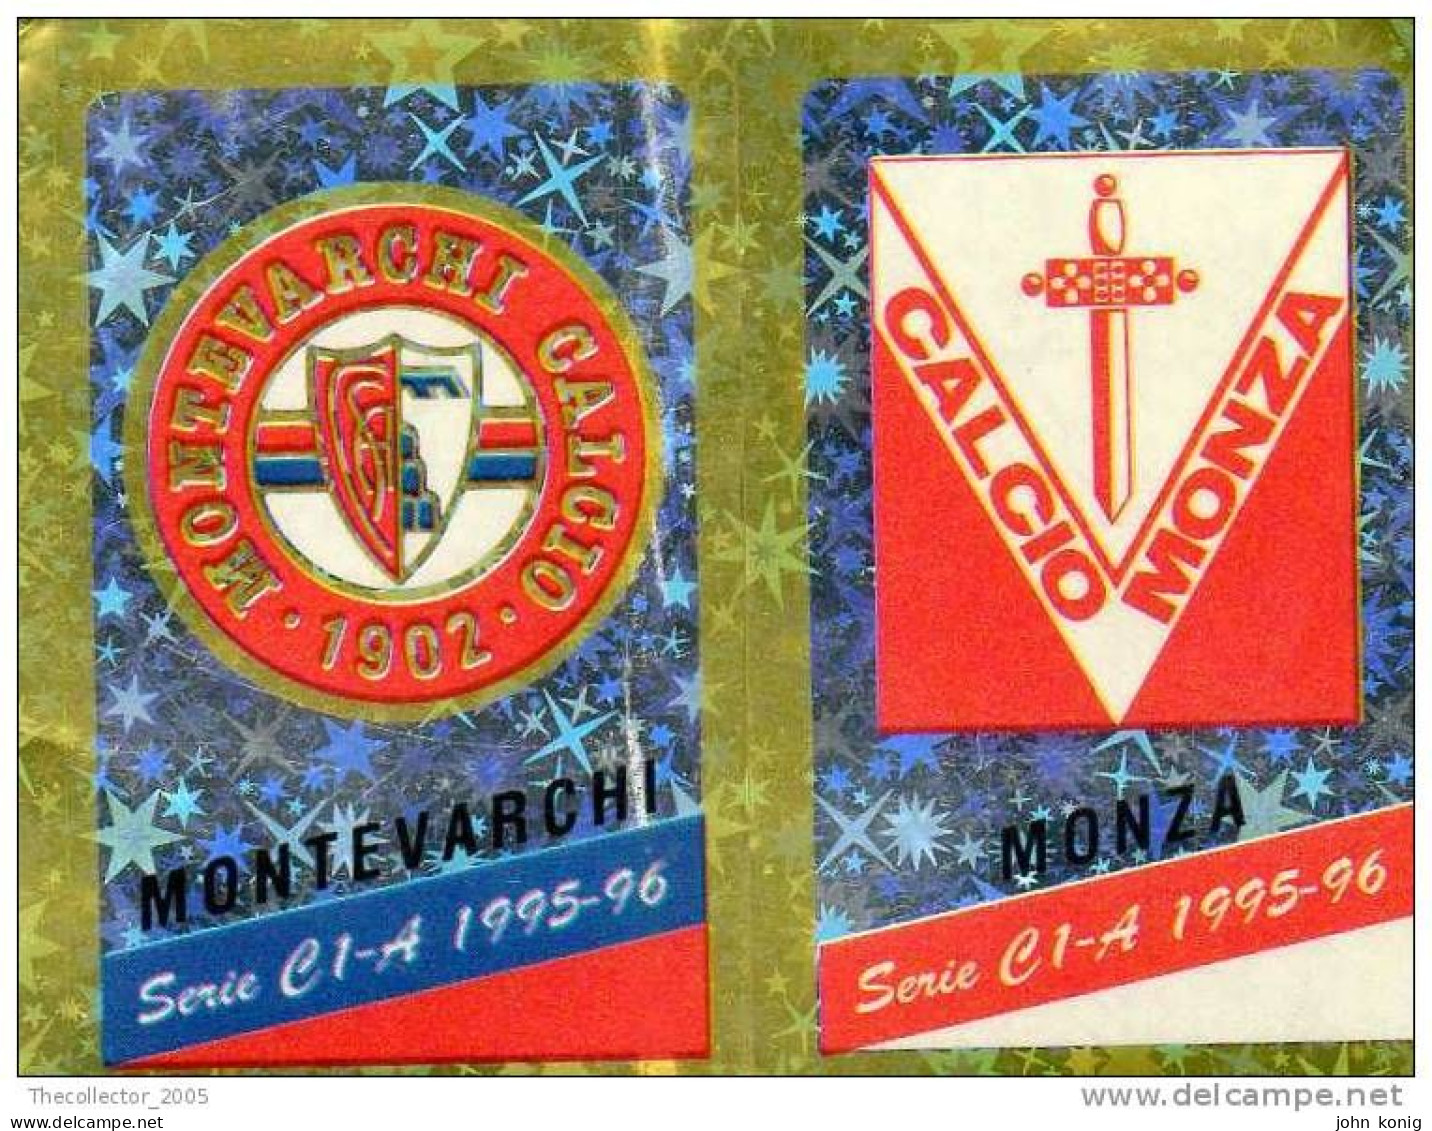 CALCIATORI - CALCIO Figurine Panini-calciatori 1995-96-n.539ab-scudetto Montevarchi-Monza (prismatico) - NUOVA-MAI INCOL - Italiaanse Uitgave